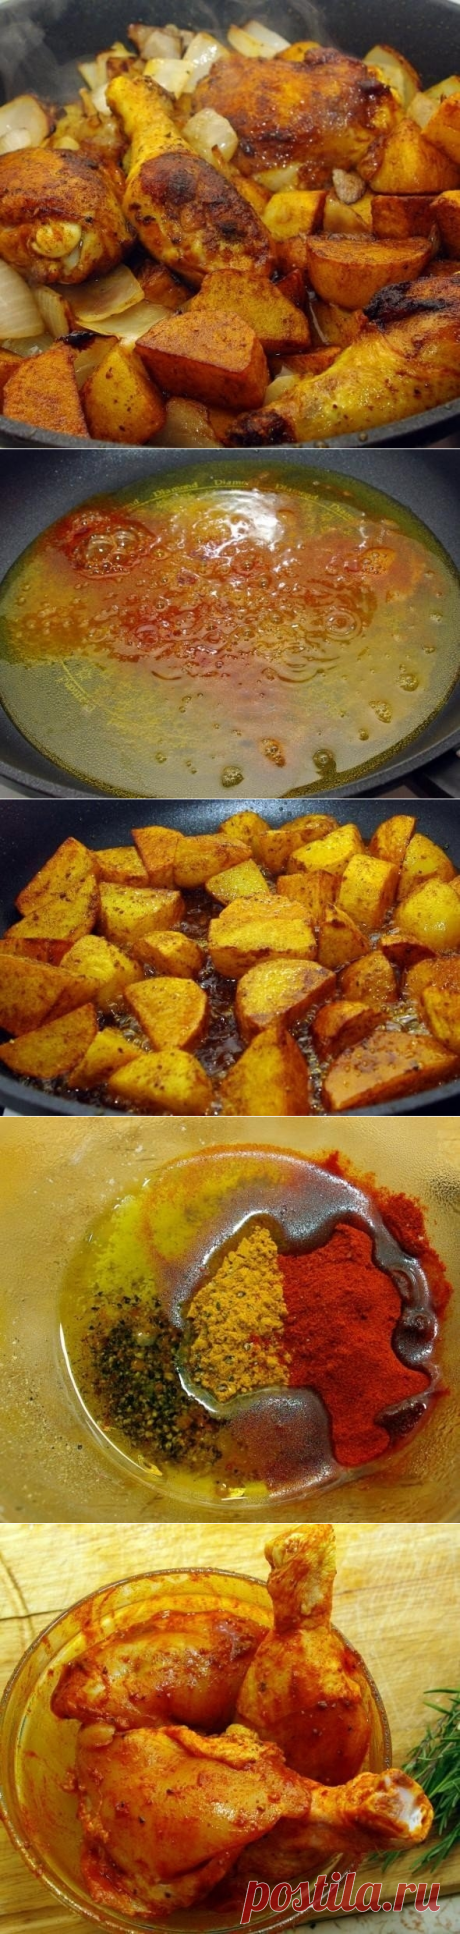 Как приготовить софрито: курица с картошкой и луком - рецепт, ингредиенты и фотографии